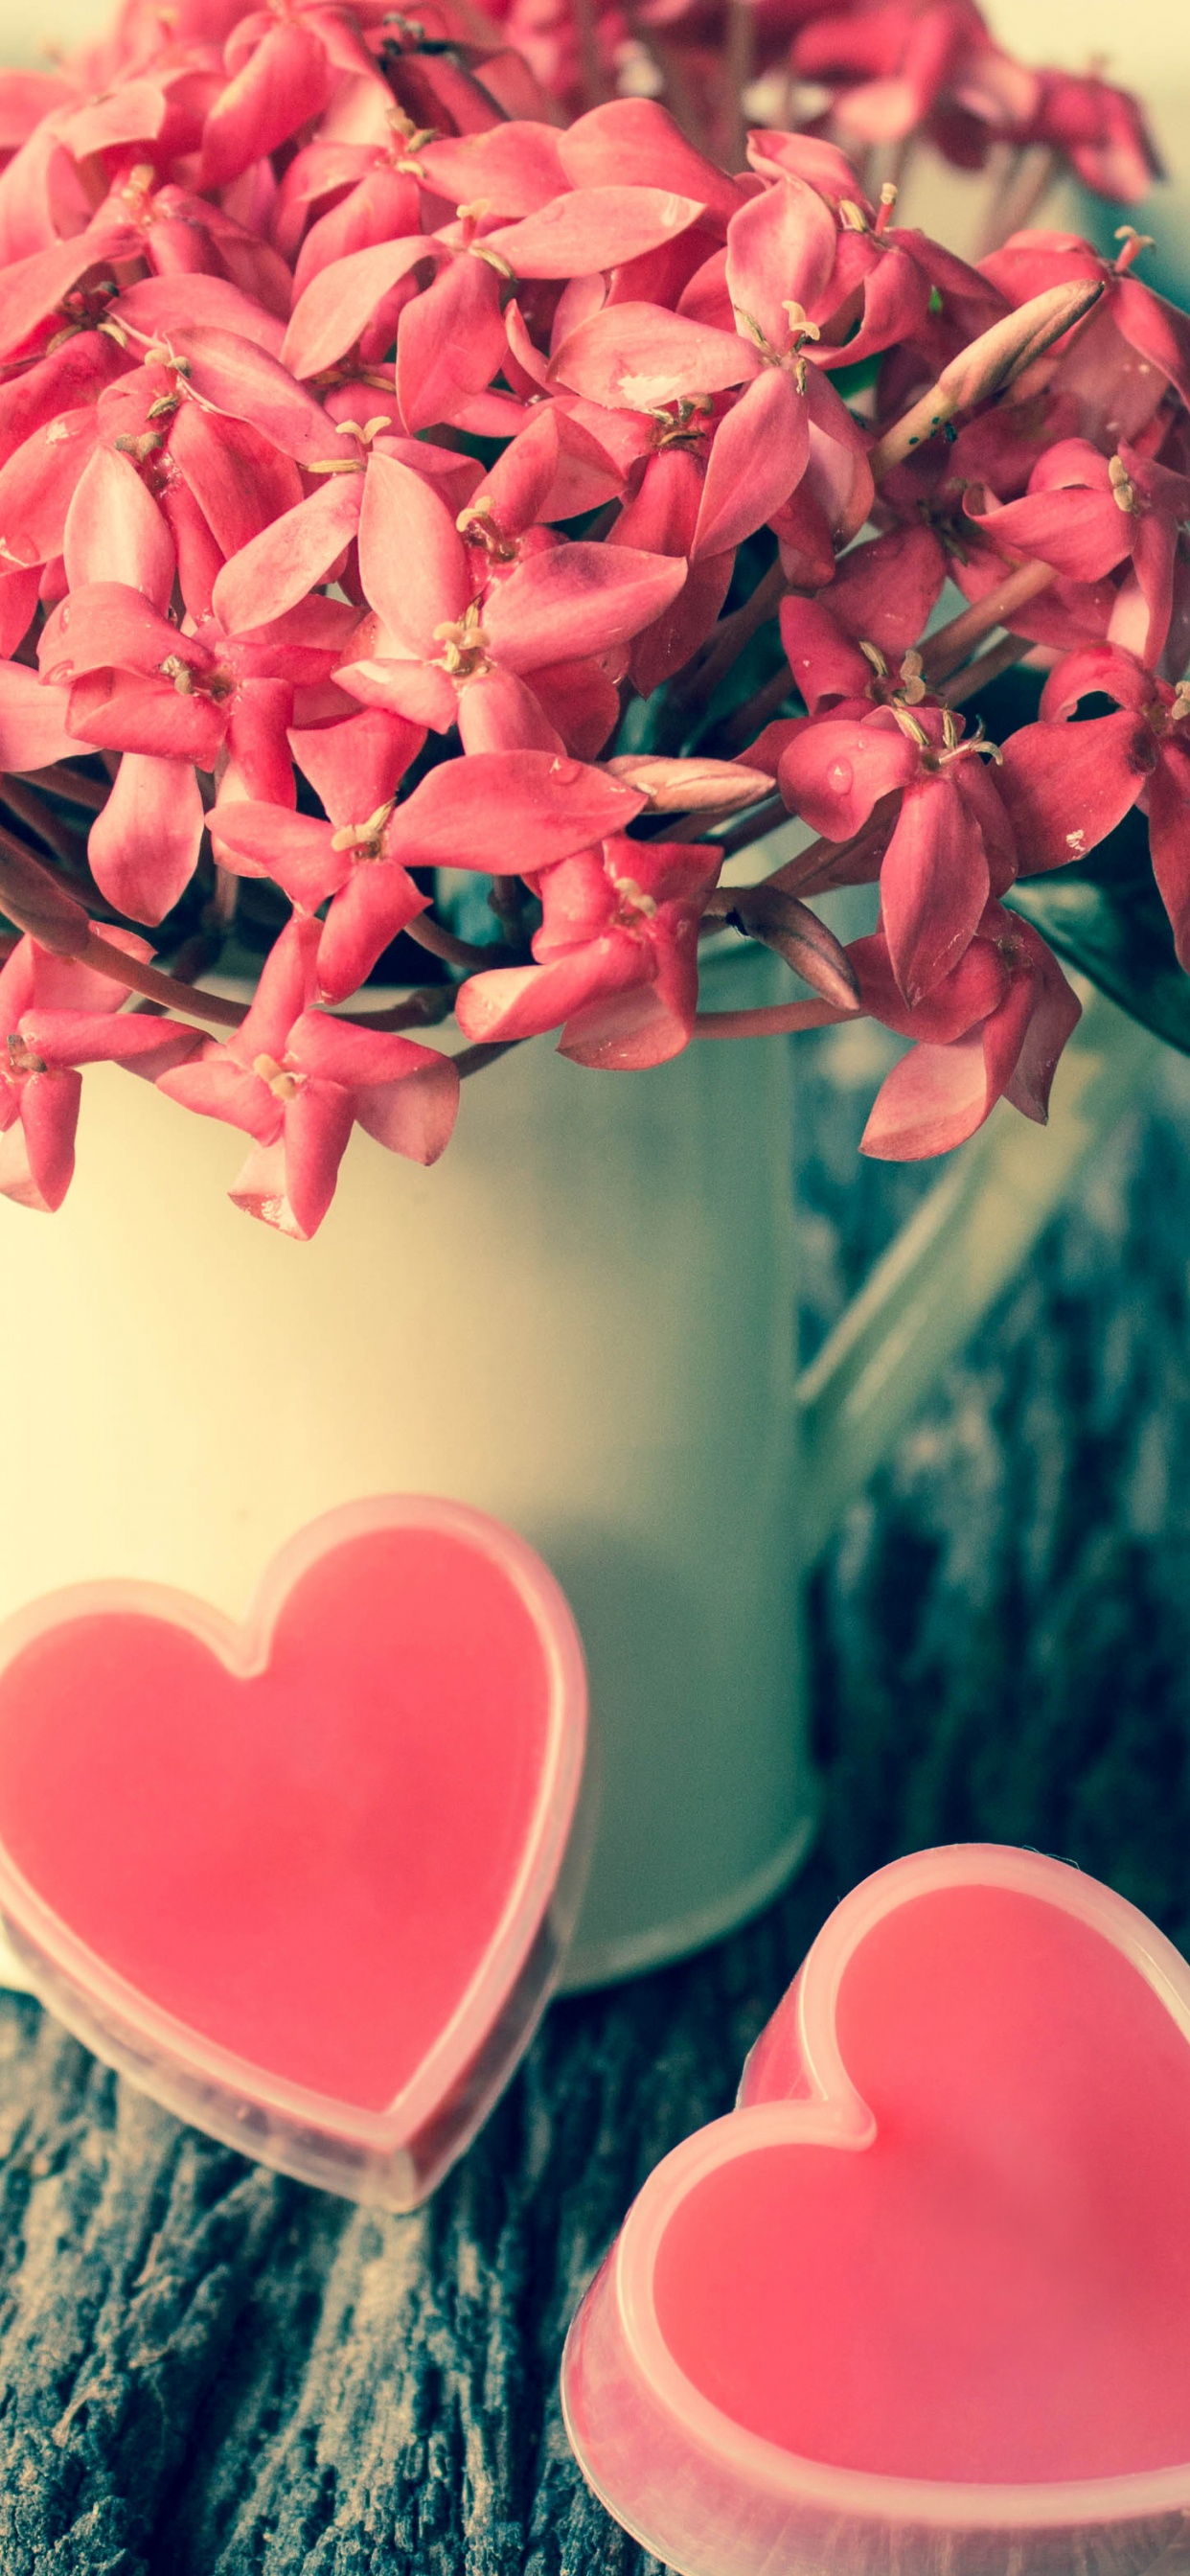 粉红色, 爱情, 心脏, 菌群, 弹簧 壁纸 1242x2688 允许